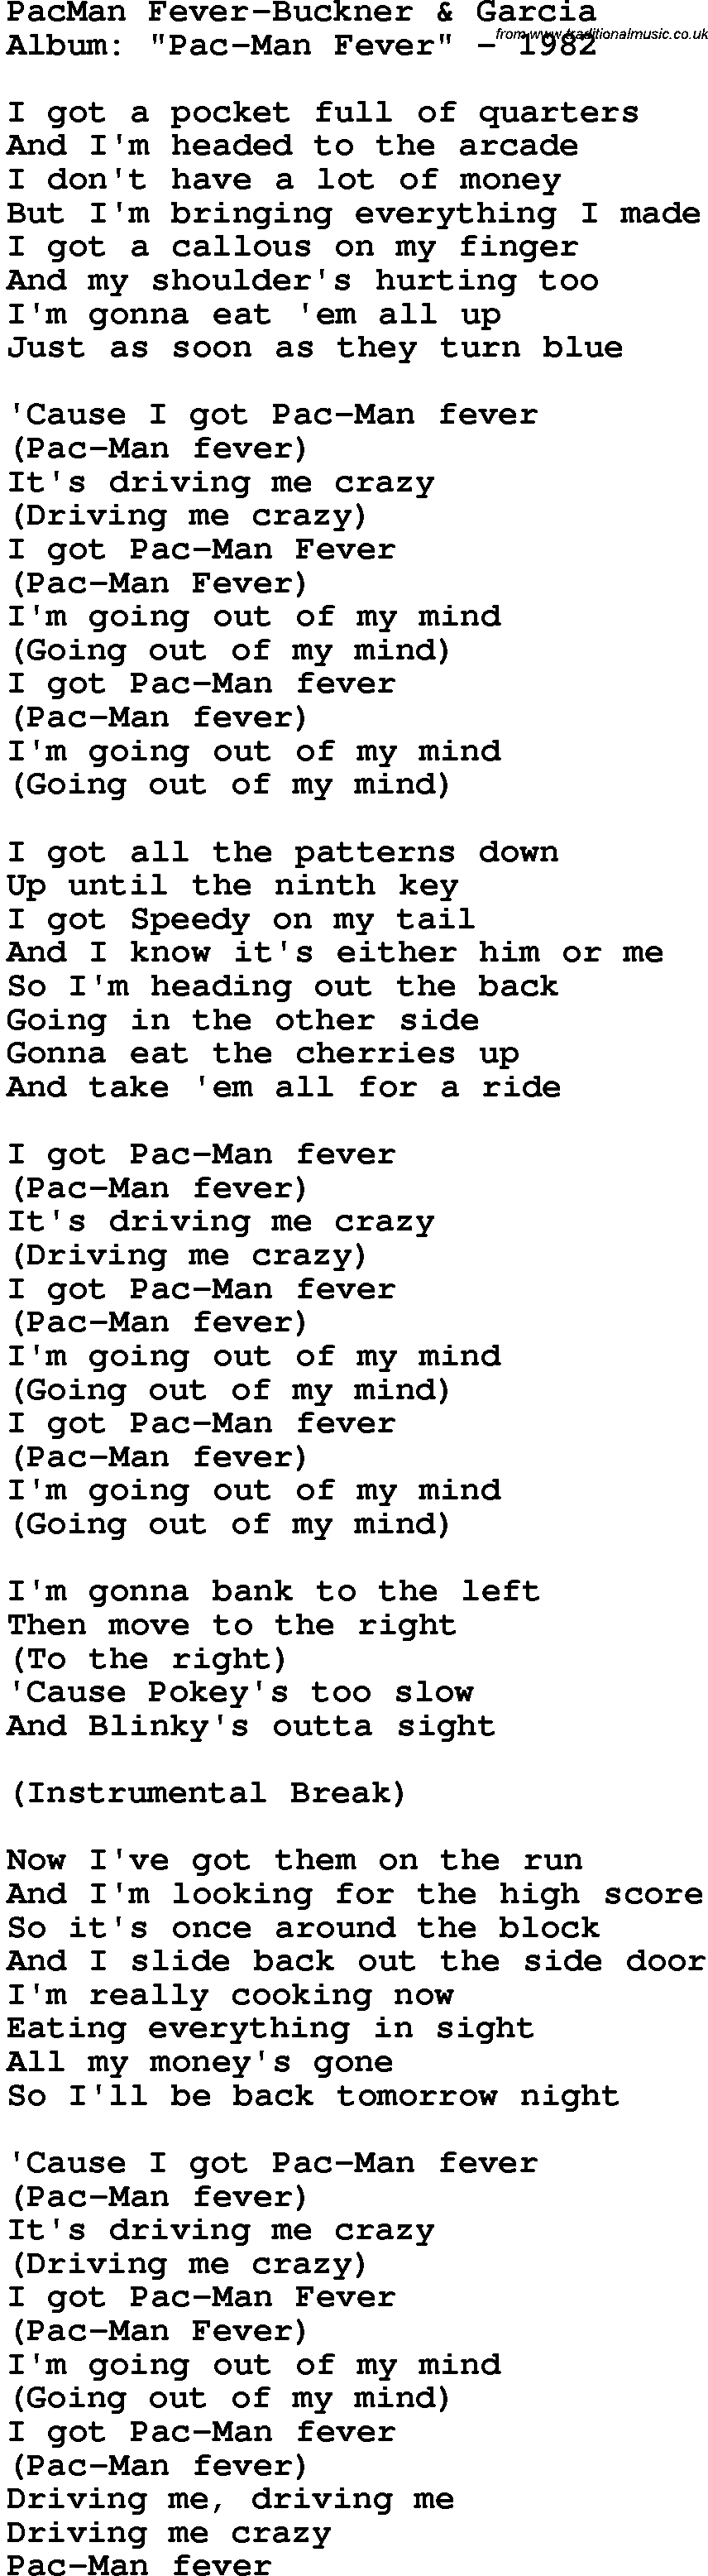 Novelty song: Pacman Fever-Buckner Garcia lyrics